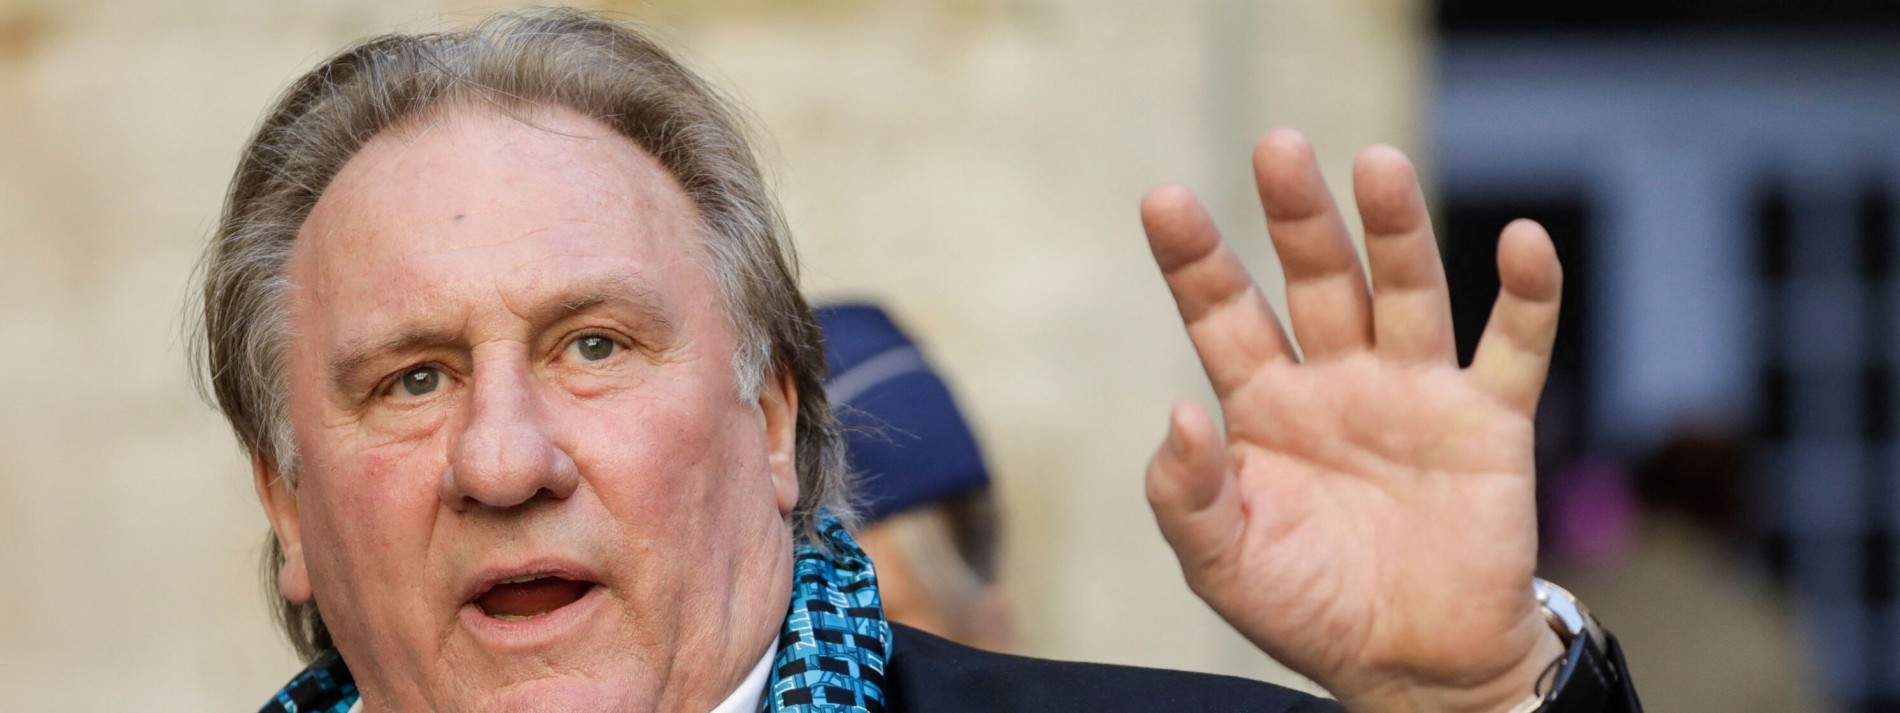 Schauspielstar Depardieu in Polizeigewahrsam